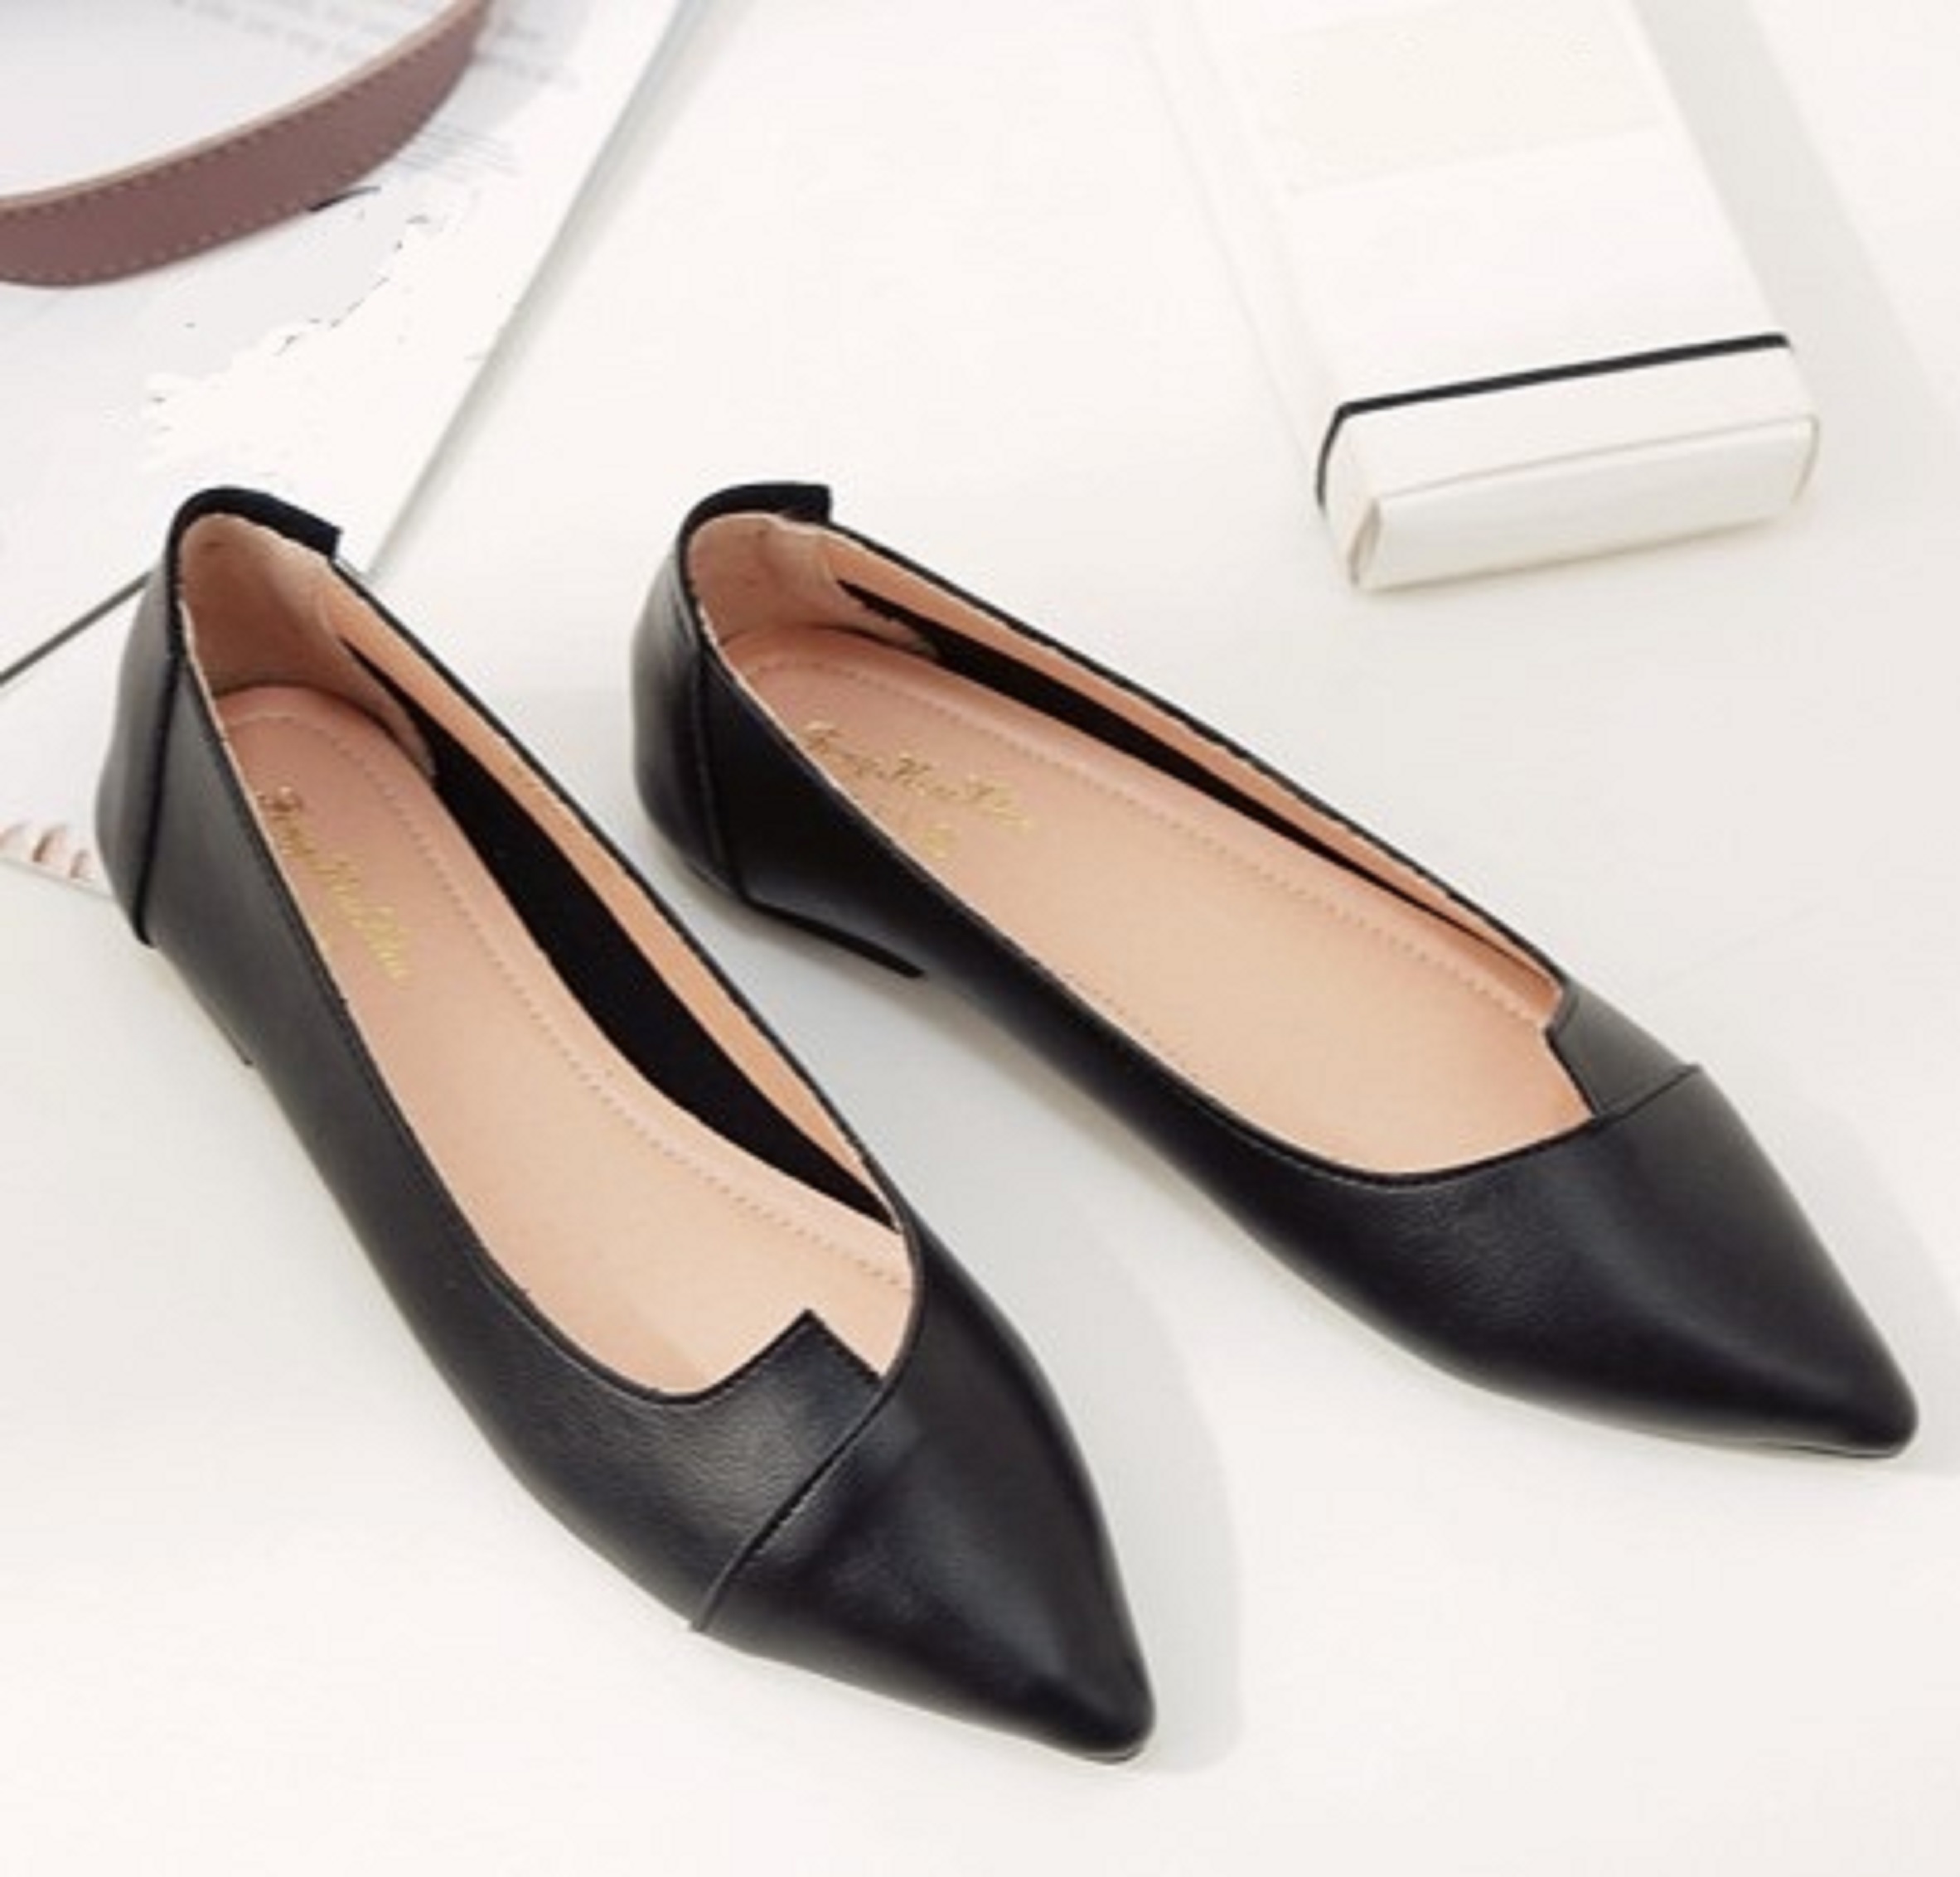 Giày bệt nữ da mềm đẹp tinh tế bigsize TVB2 có 2 màu kem và đen, size to, ngoại cỡ da đẹp mang êm